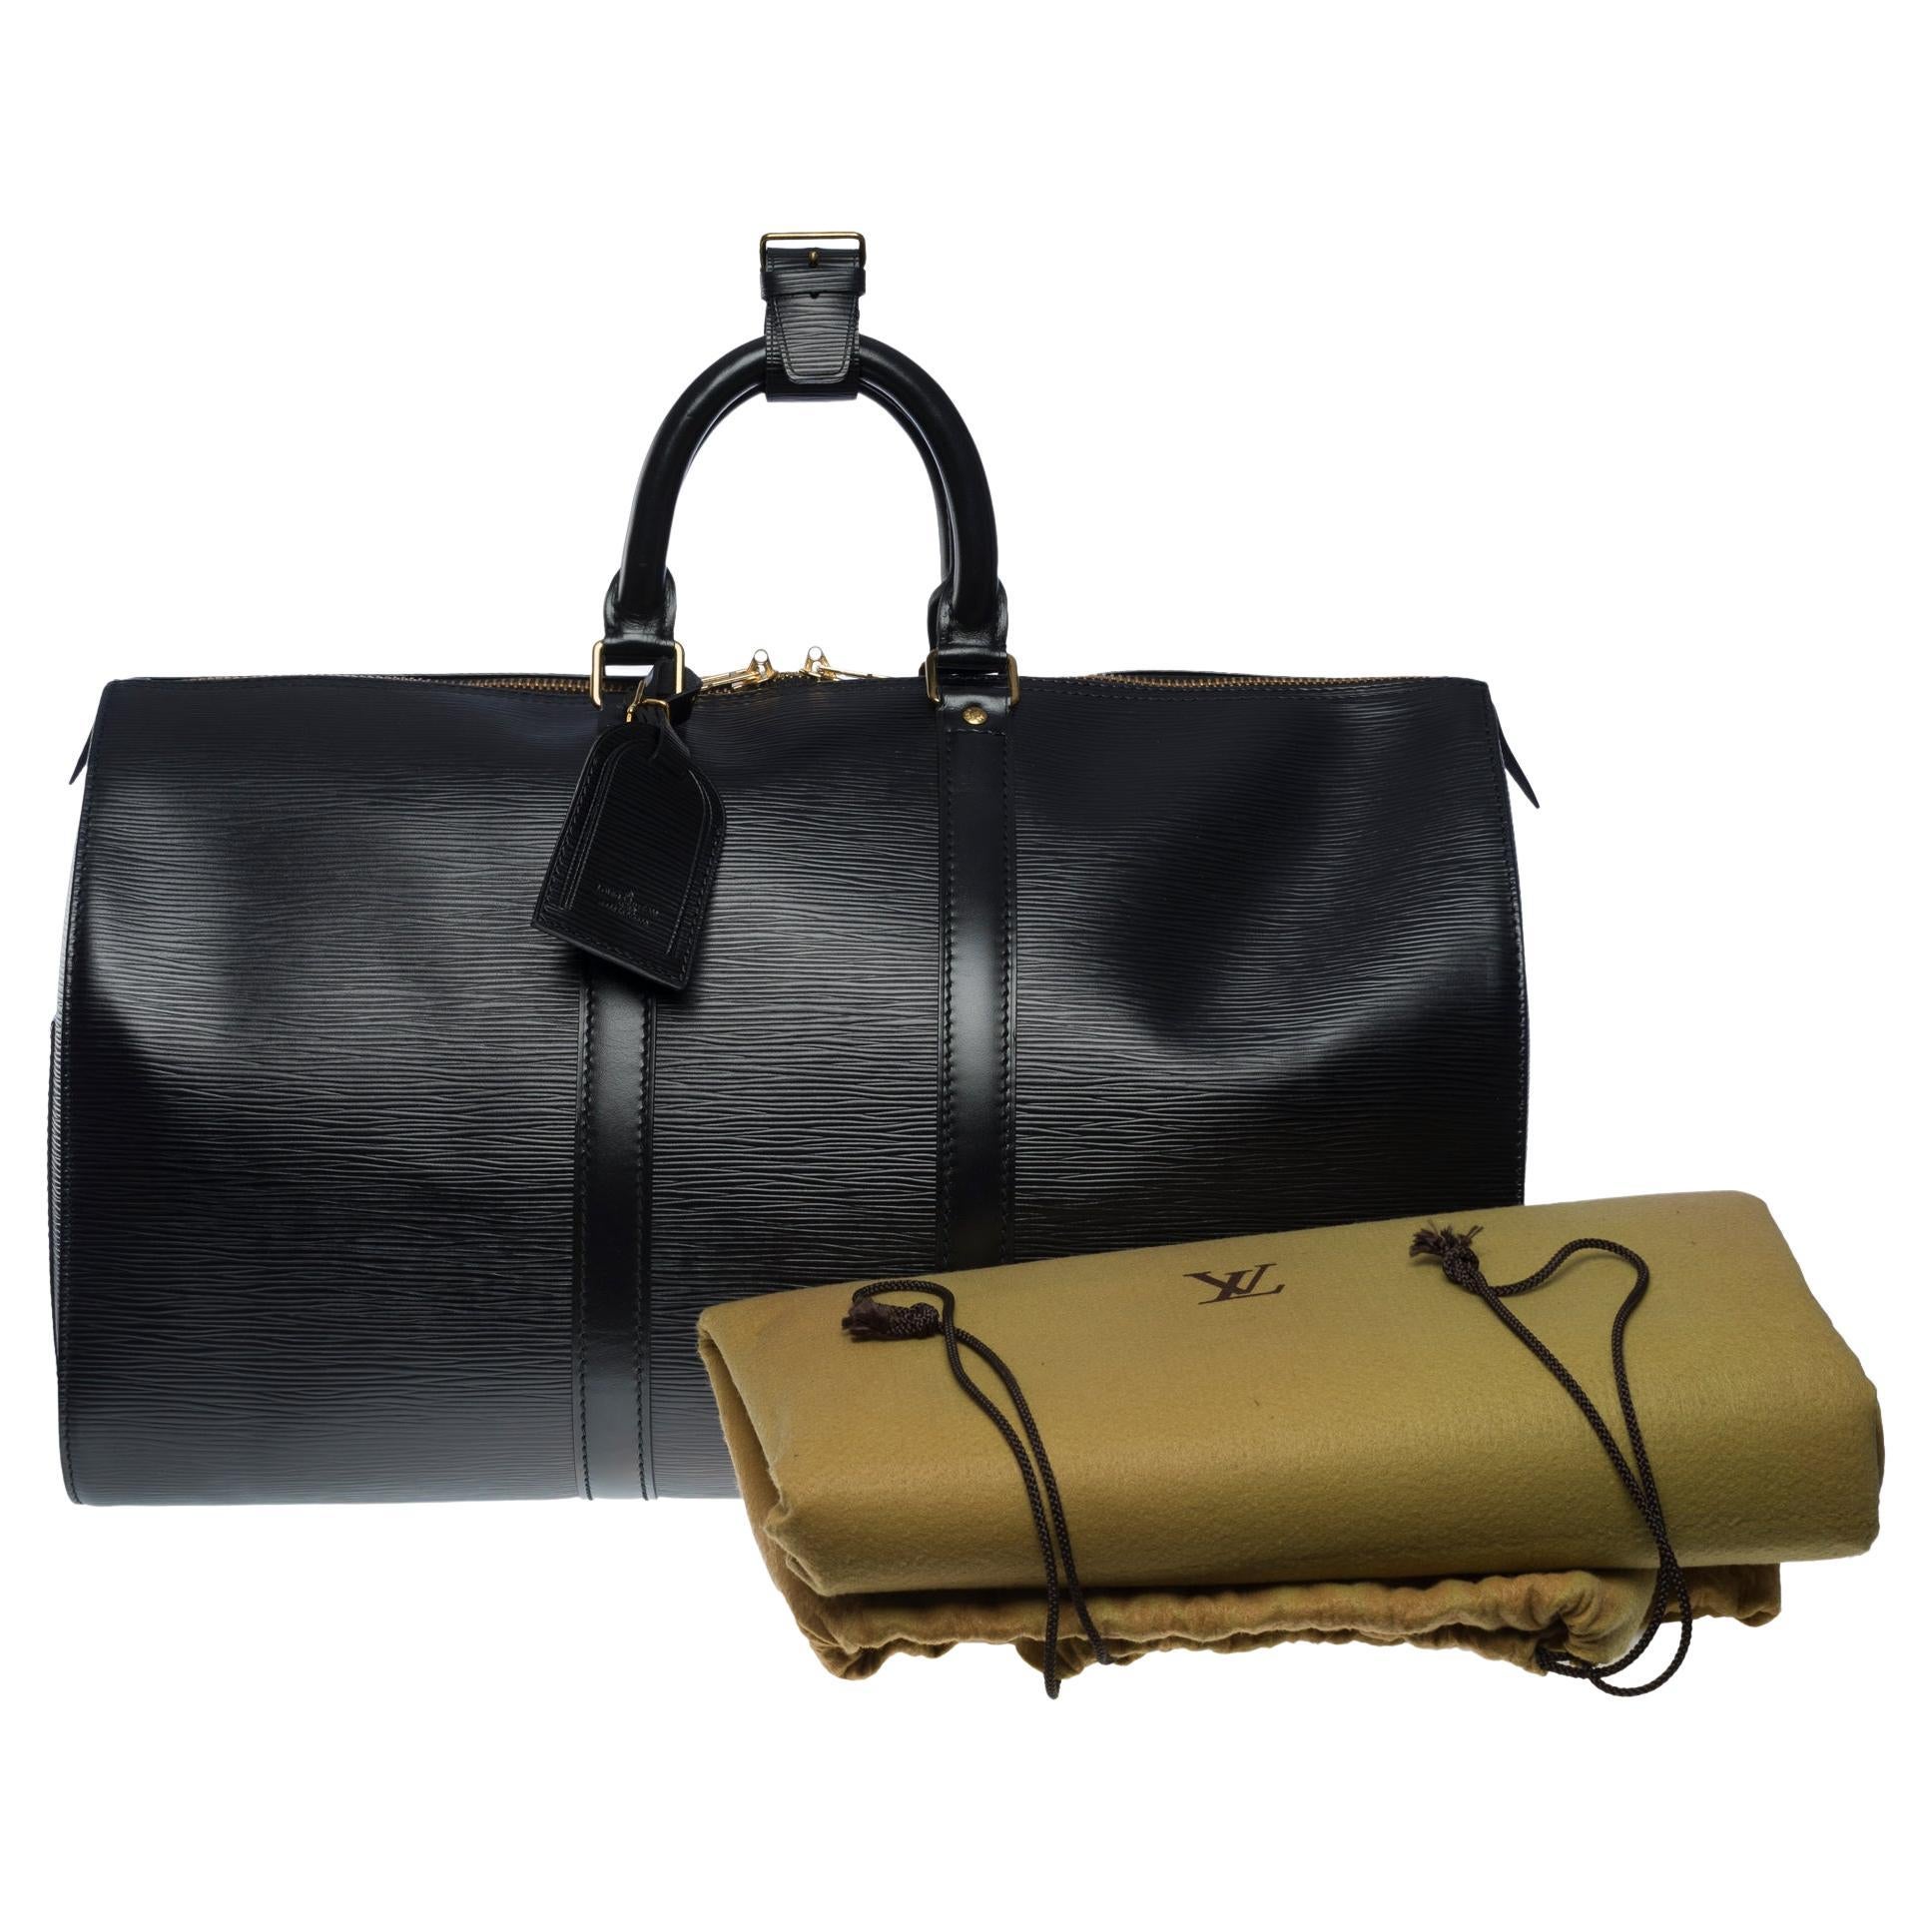 Shop for Louis Vuitton Black Epi Leather Keepall 55 cm Duffle Bag